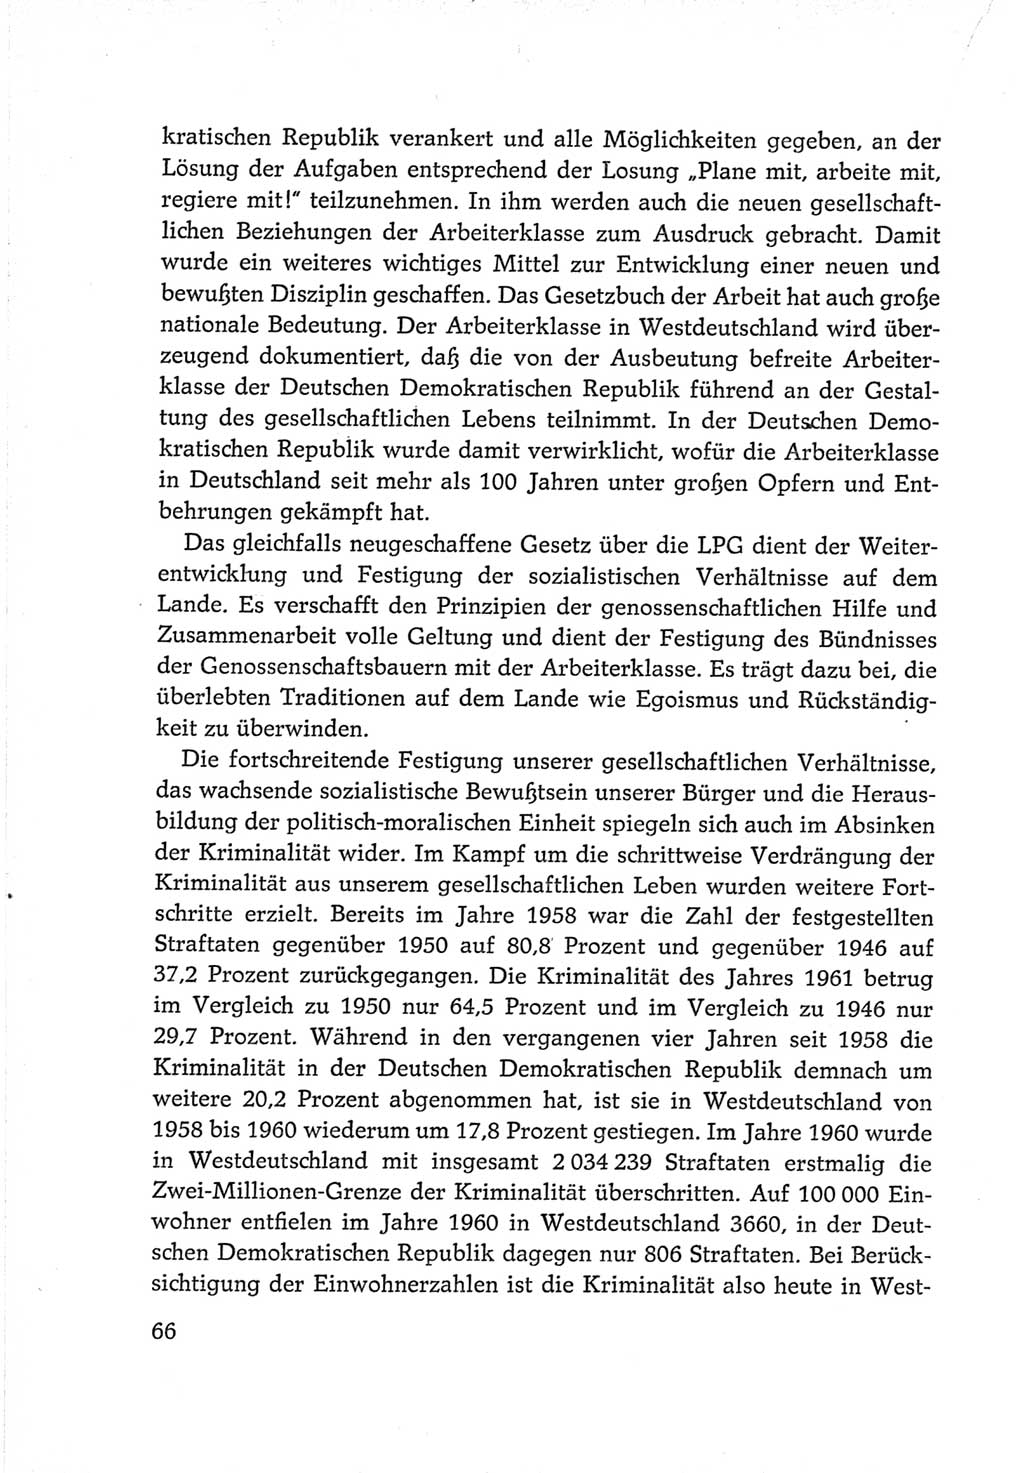 Protokoll der Verhandlungen des Ⅵ. Parteitages der Sozialistischen Einheitspartei Deutschlands (SED) [Deutsche Demokratische Republik (DDR)] 1963, Band Ⅳ, Seite 66 (Prot. Verh. Ⅵ. PT SED DDR 1963, Bd. Ⅳ, S. 66)